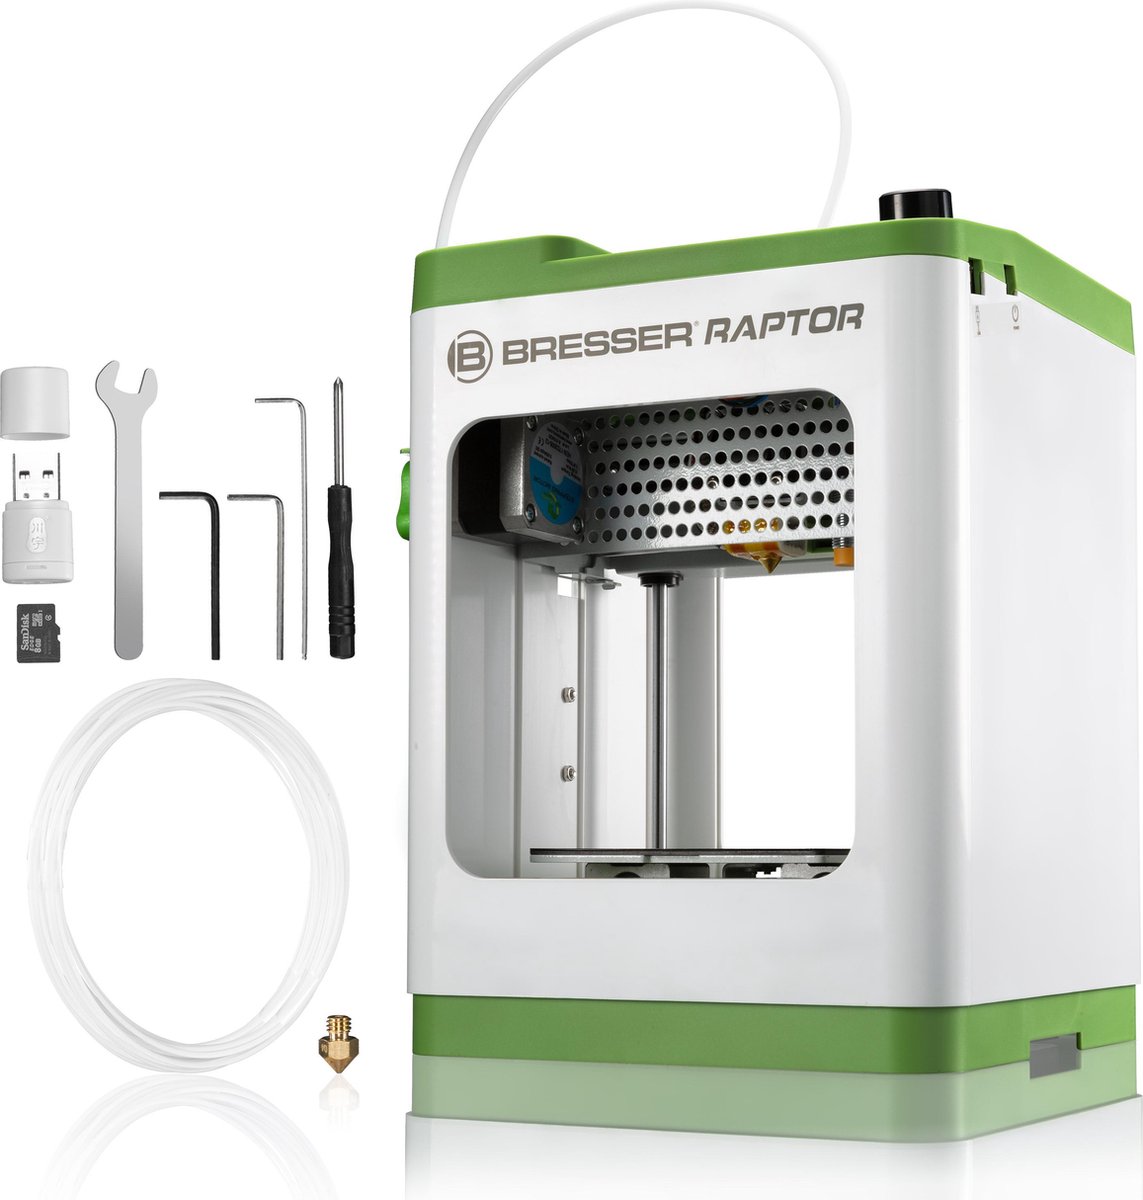 Bresser 3D Printer - Raptor